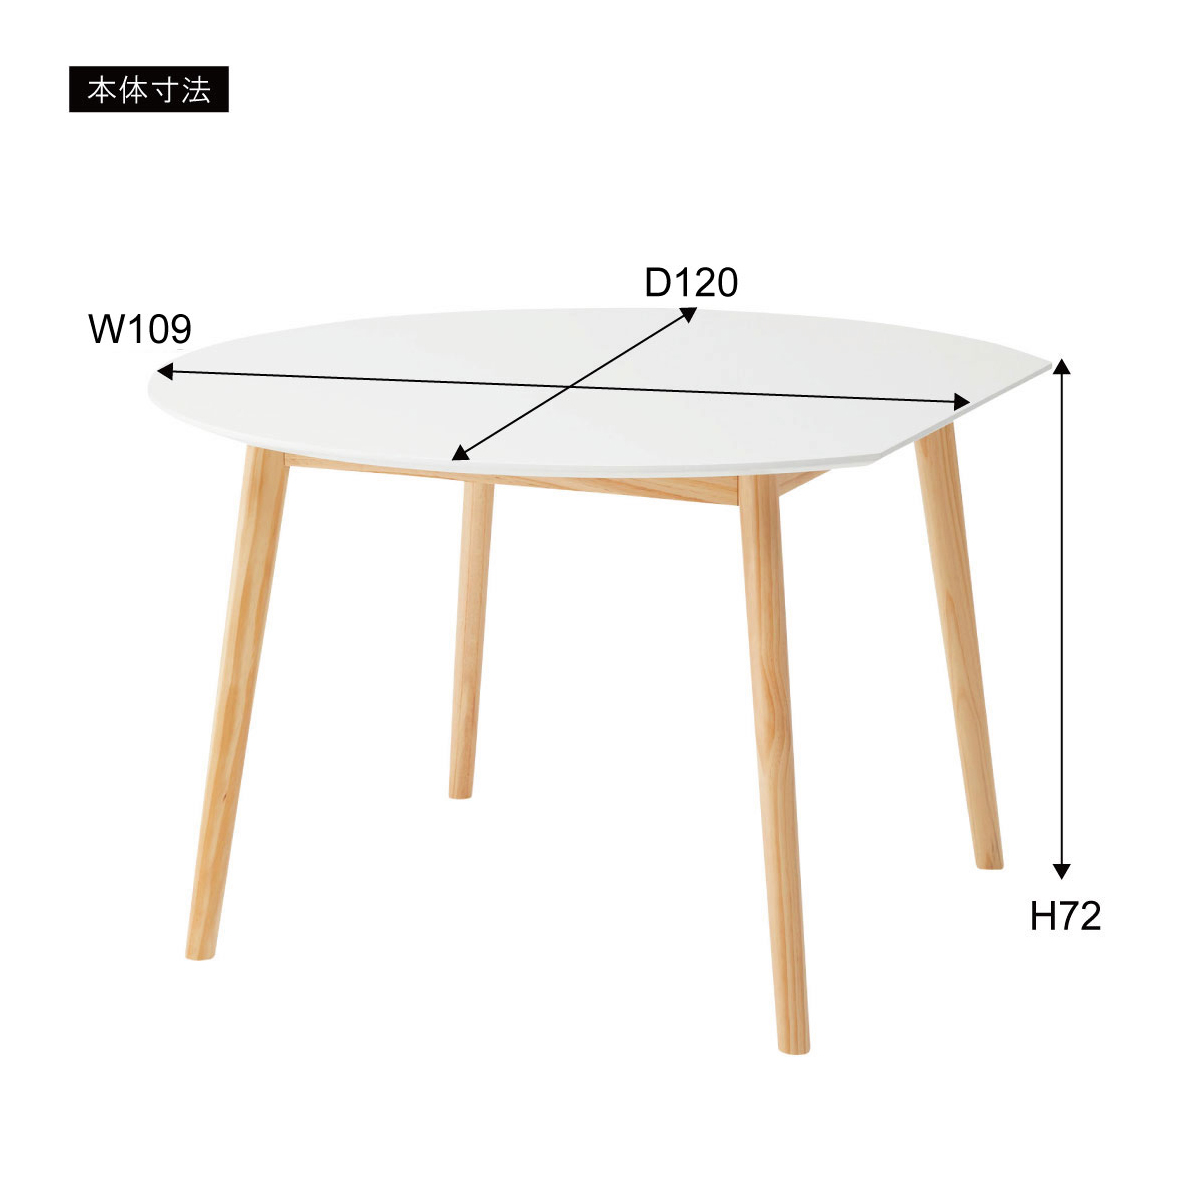 変形ラウンドテーブル ホワイト 白 丸テーブル ラウンドテーブル 